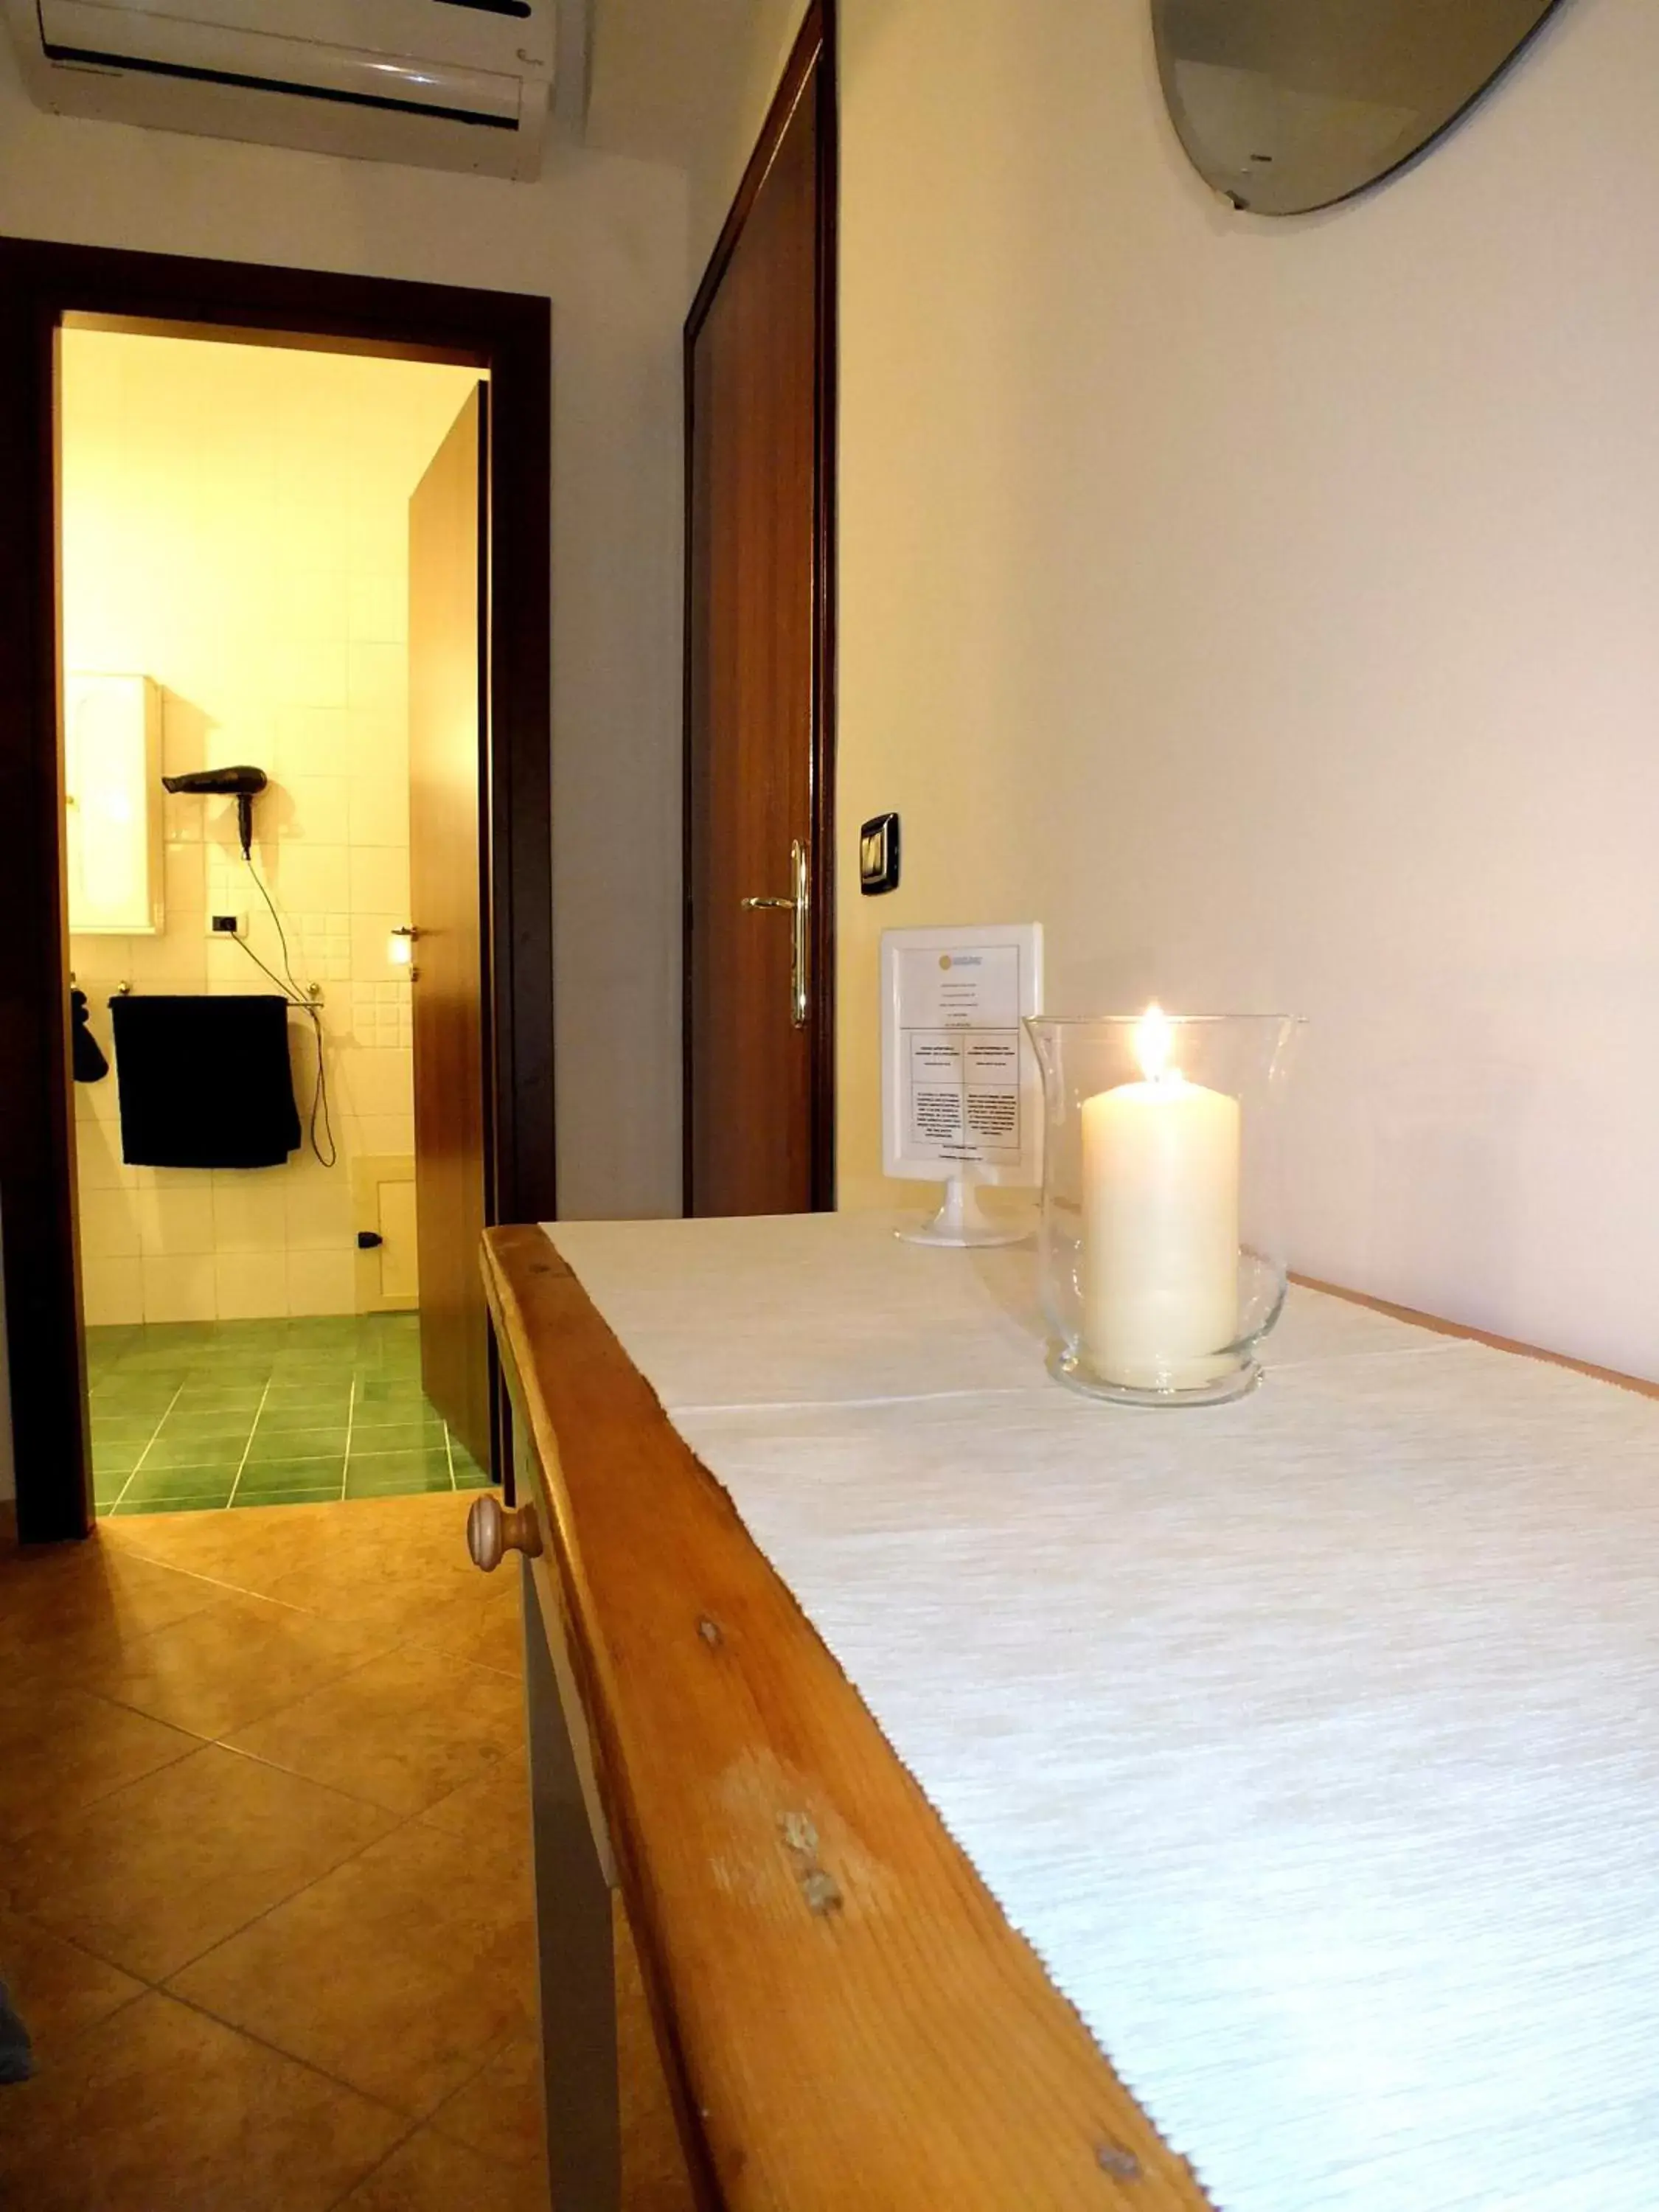 Photo of the whole room, Bathroom in B&B Villa sul Mare